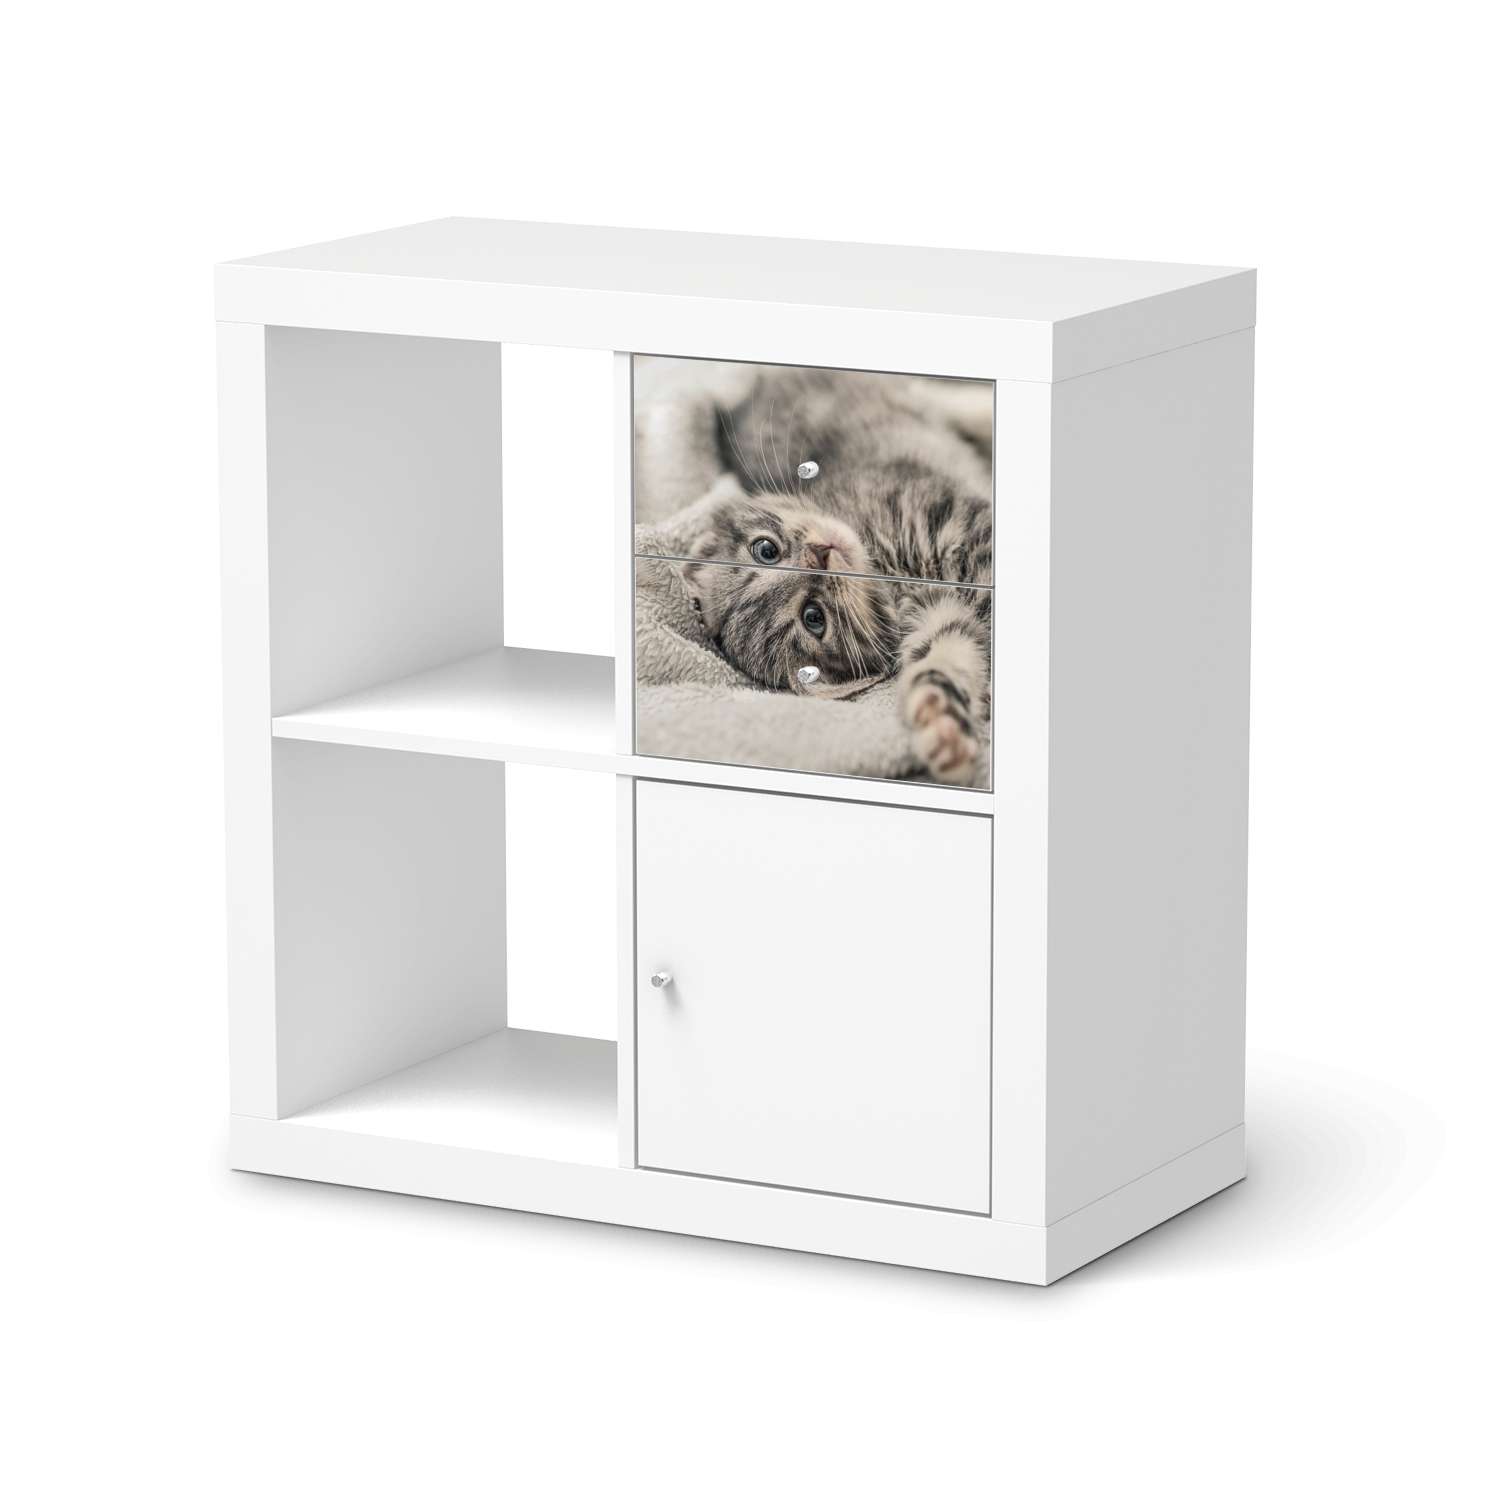 M?belfolie IKEA IKEA Expedit Regal Schubladen - Design: Kitty the Cat von creatisto